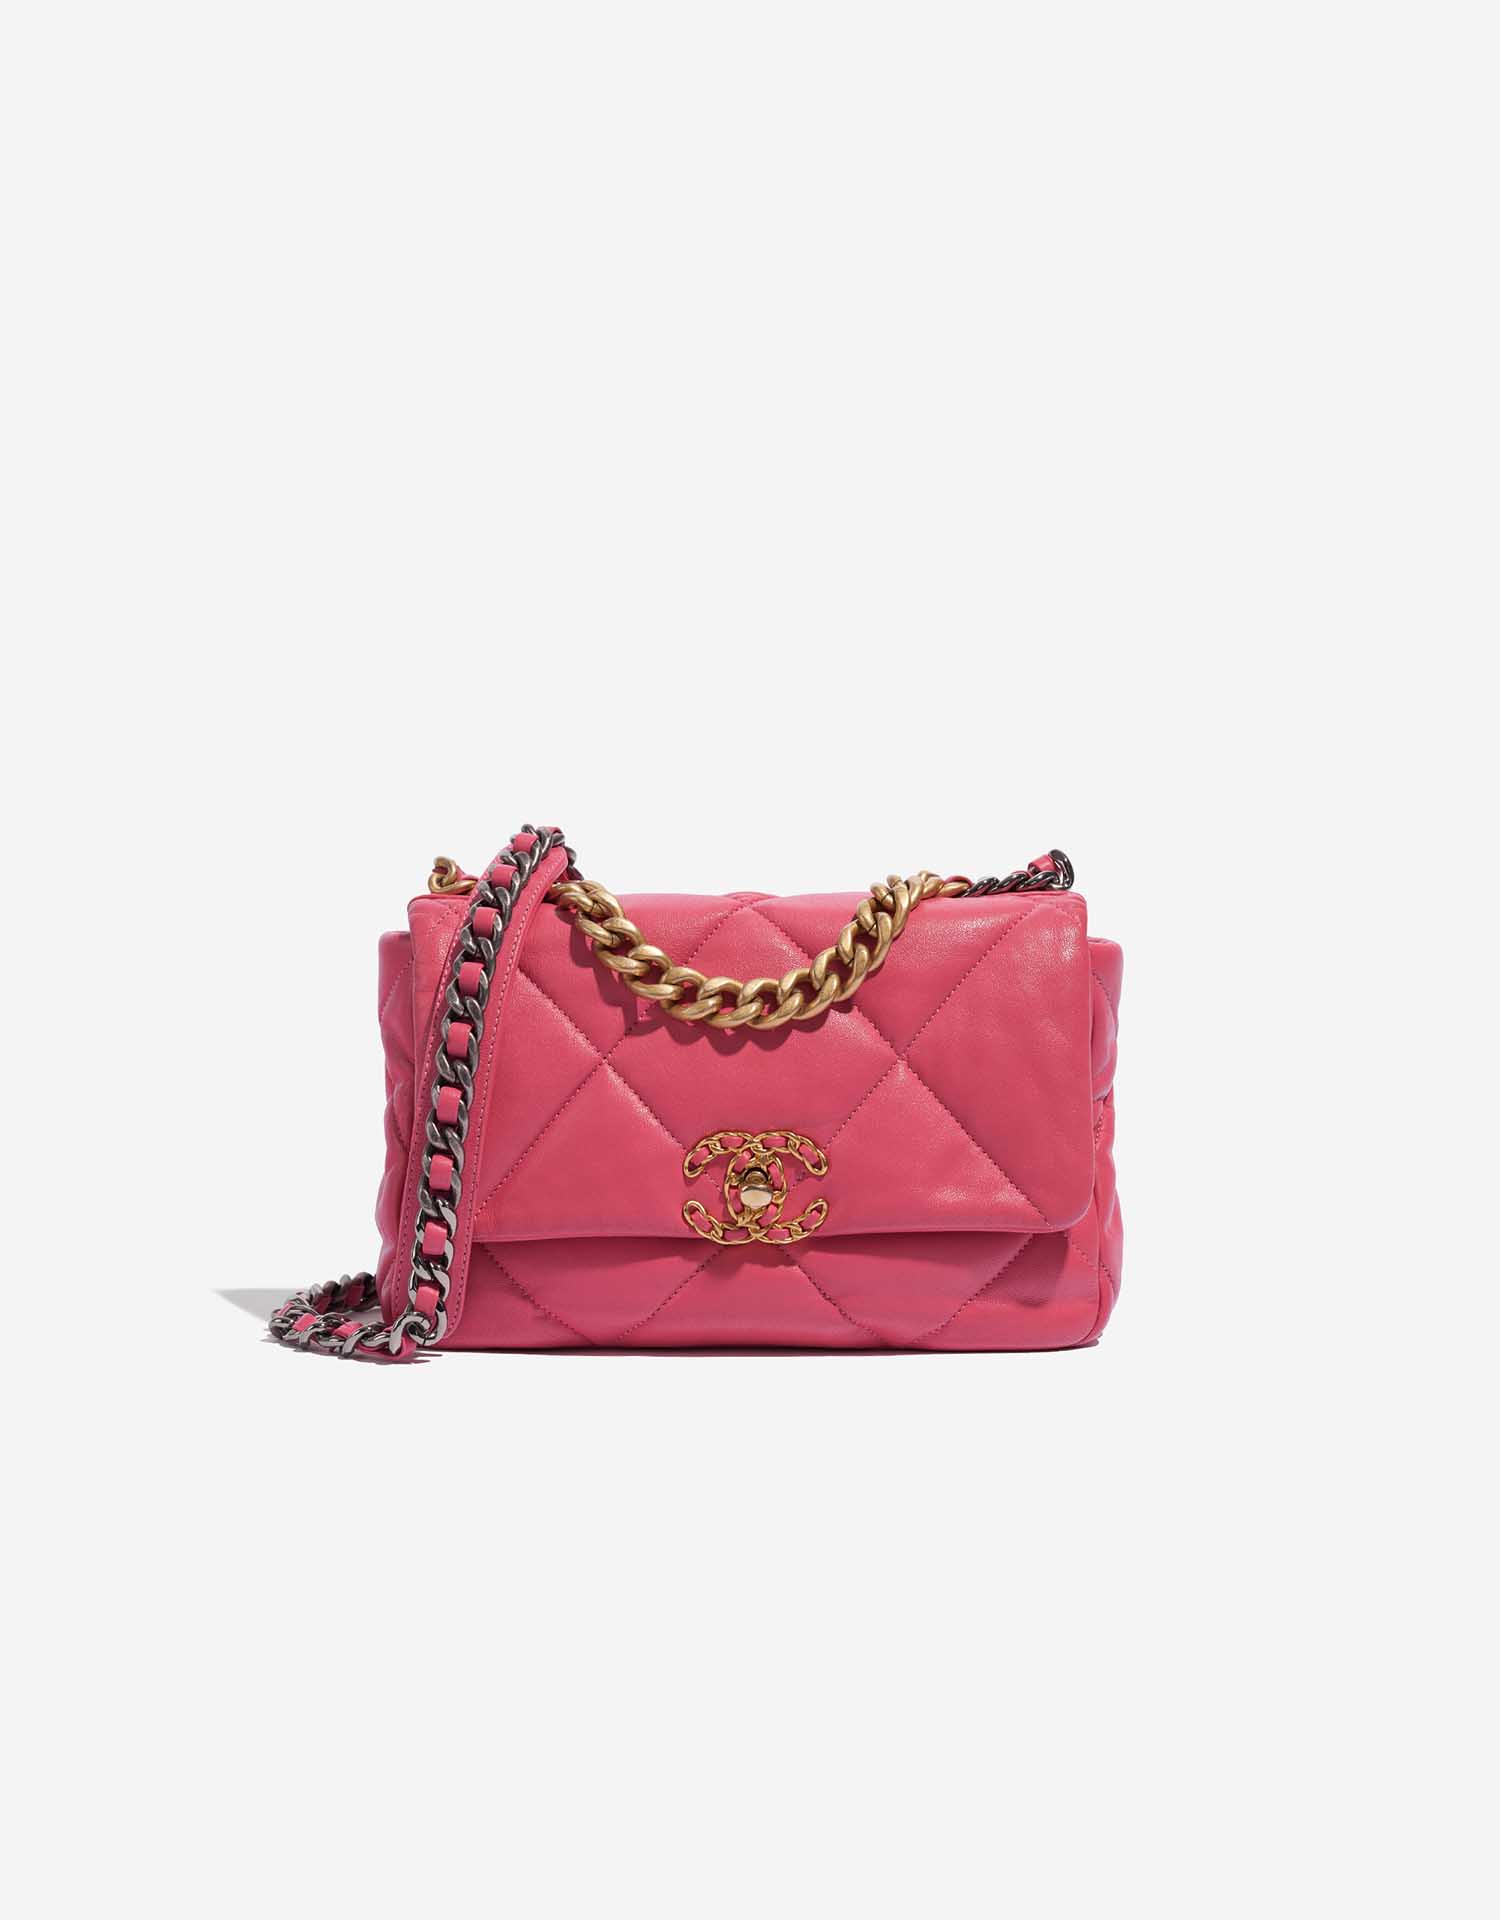 chanel neon pink bag